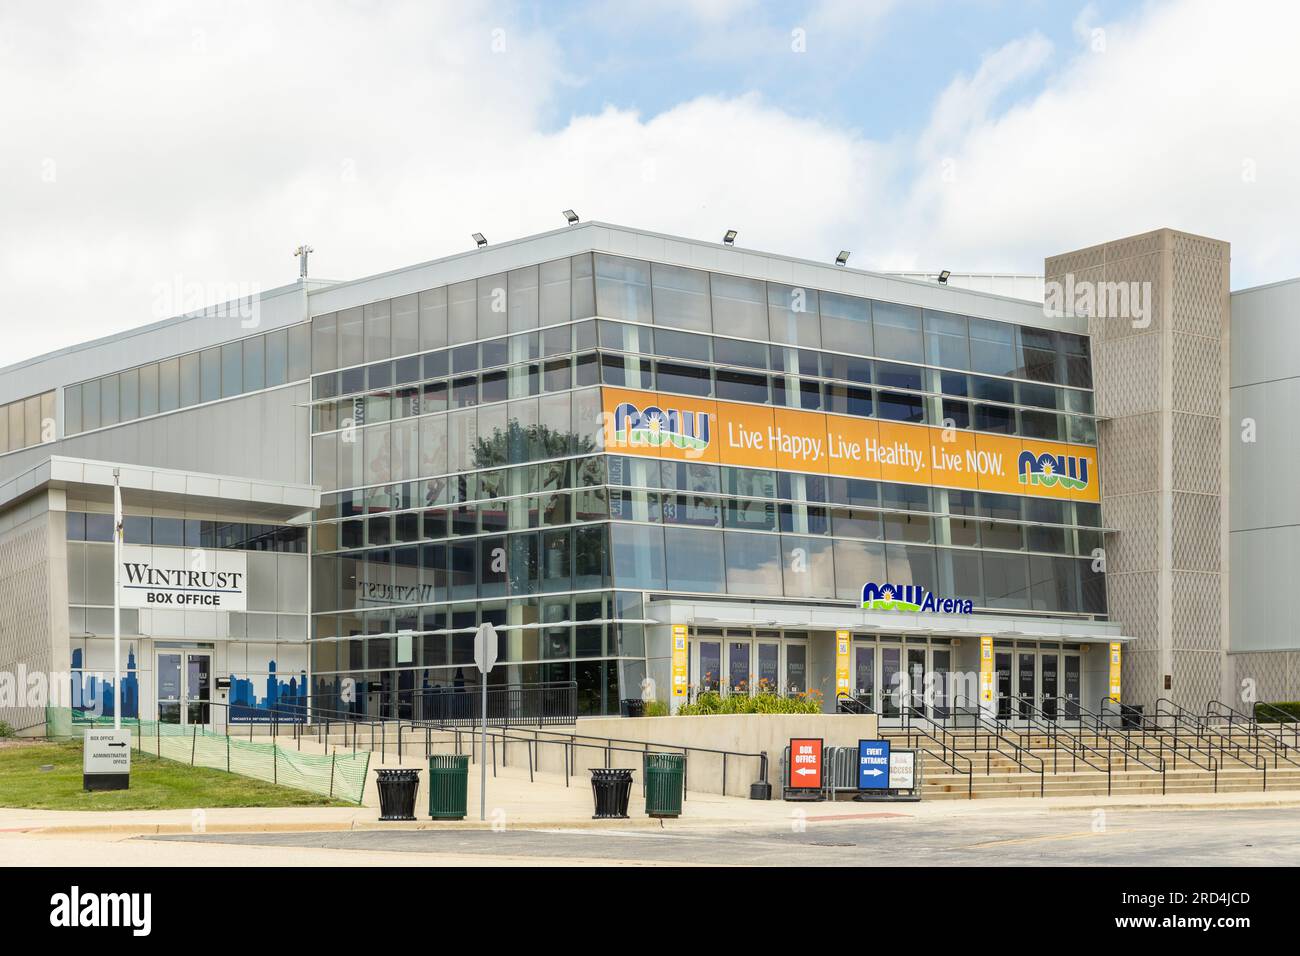 Extérieur de la NOW Arena, qui est un lieu polyvalent situé dans la banlieue de Chicago. Banque D'Images